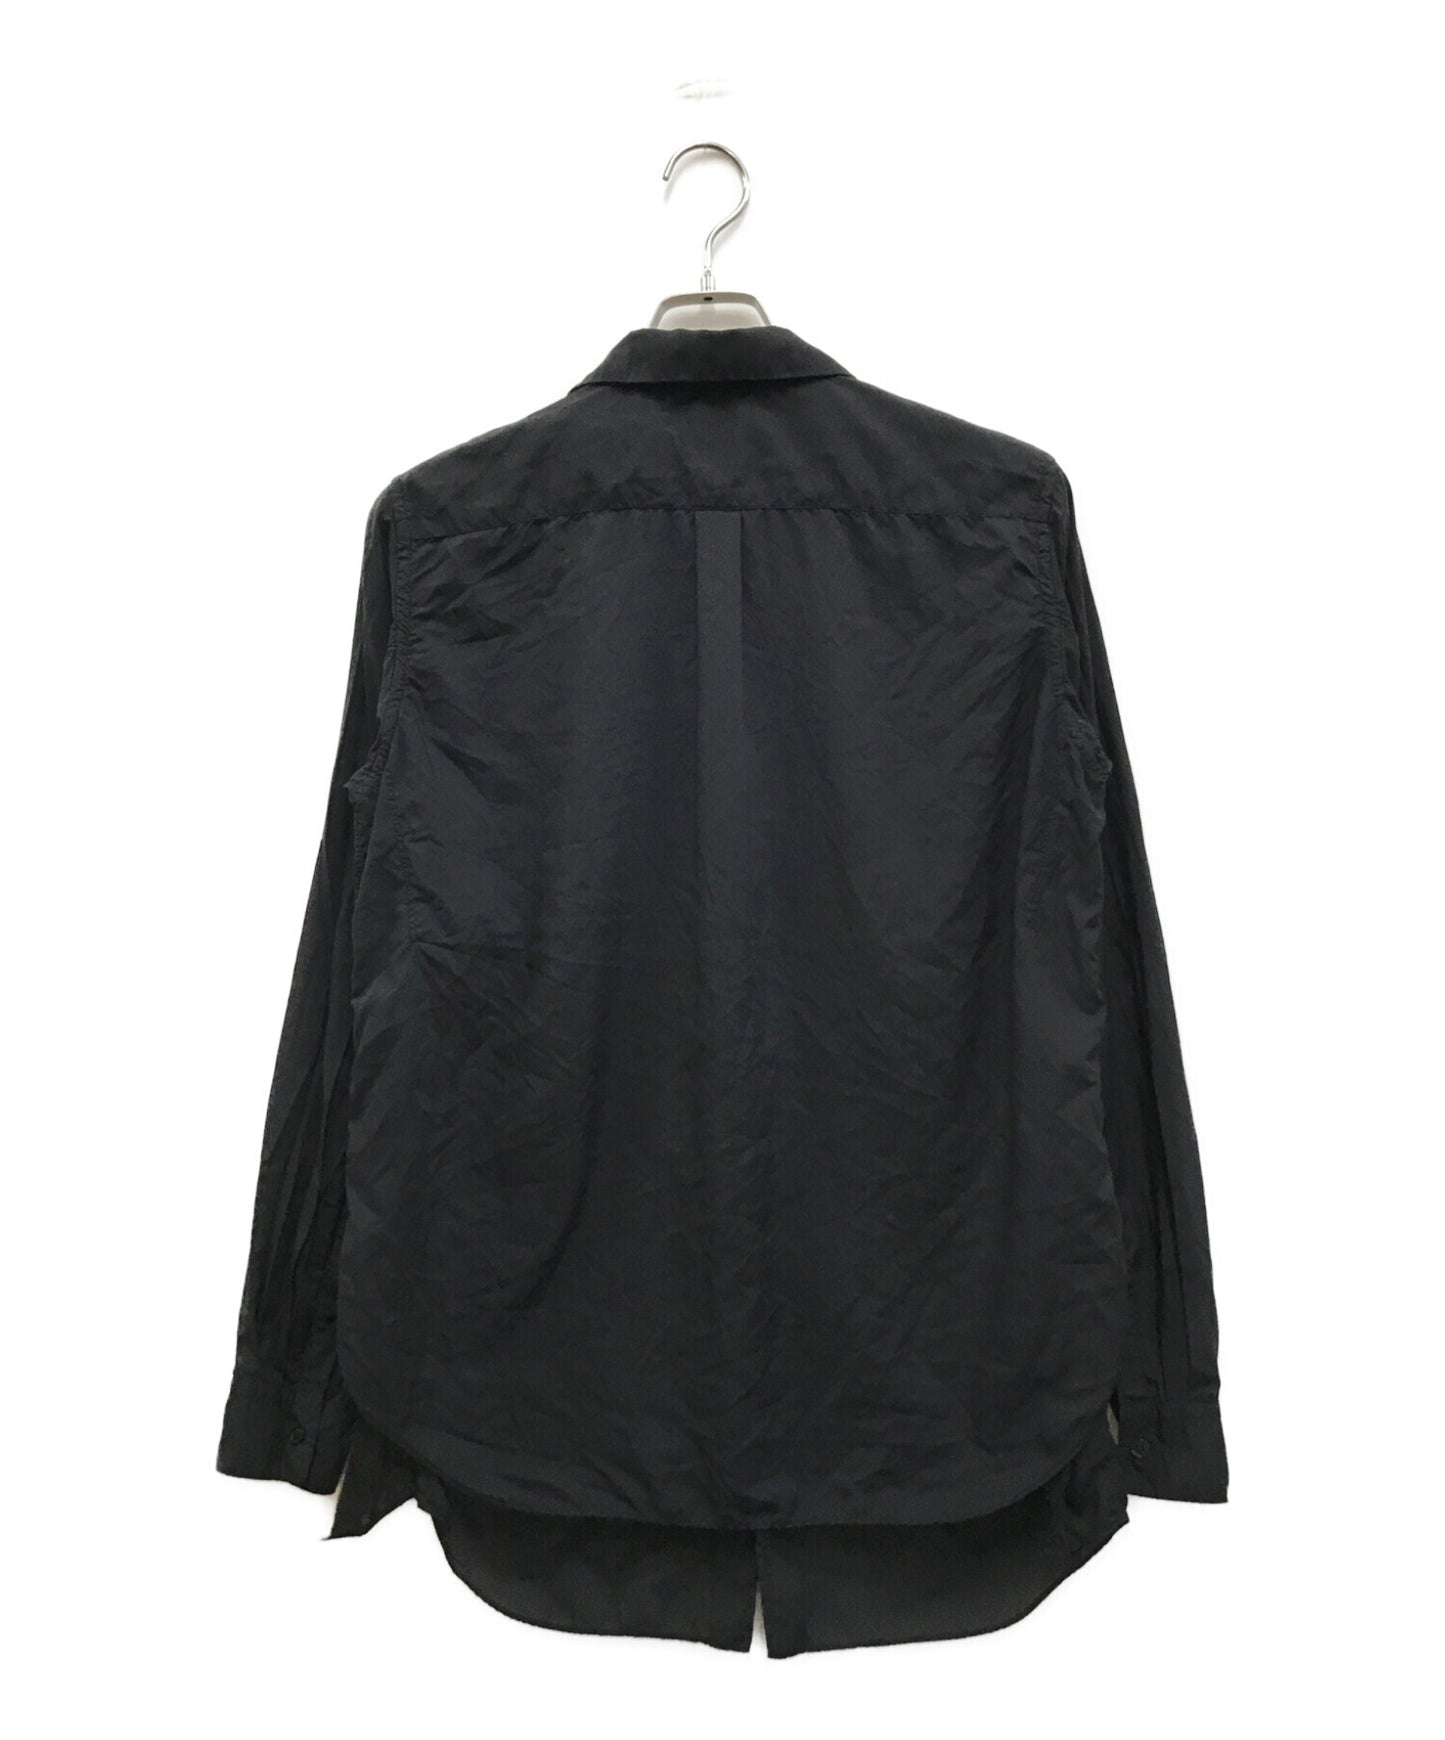 Black Comme des Garcons 더블 가슴 셔츠 1D-B015